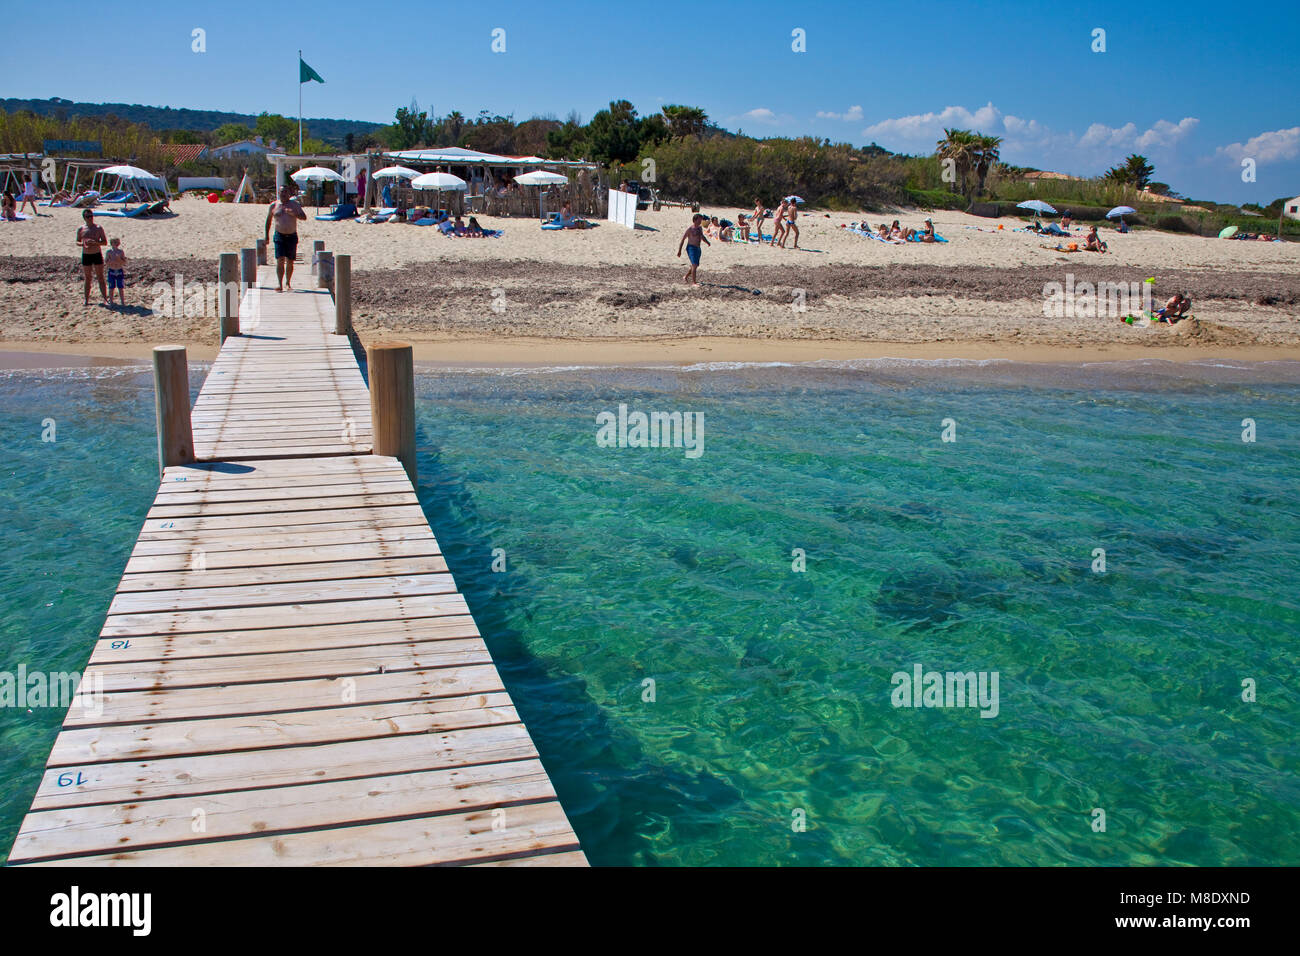 Anlegestelle am Strand von Pampelonne, beliebten Strand von Saint Tropez, Côte d'Azur, Südfrankreich, Cote d'Azur, Frankreich, Europa Stockfoto